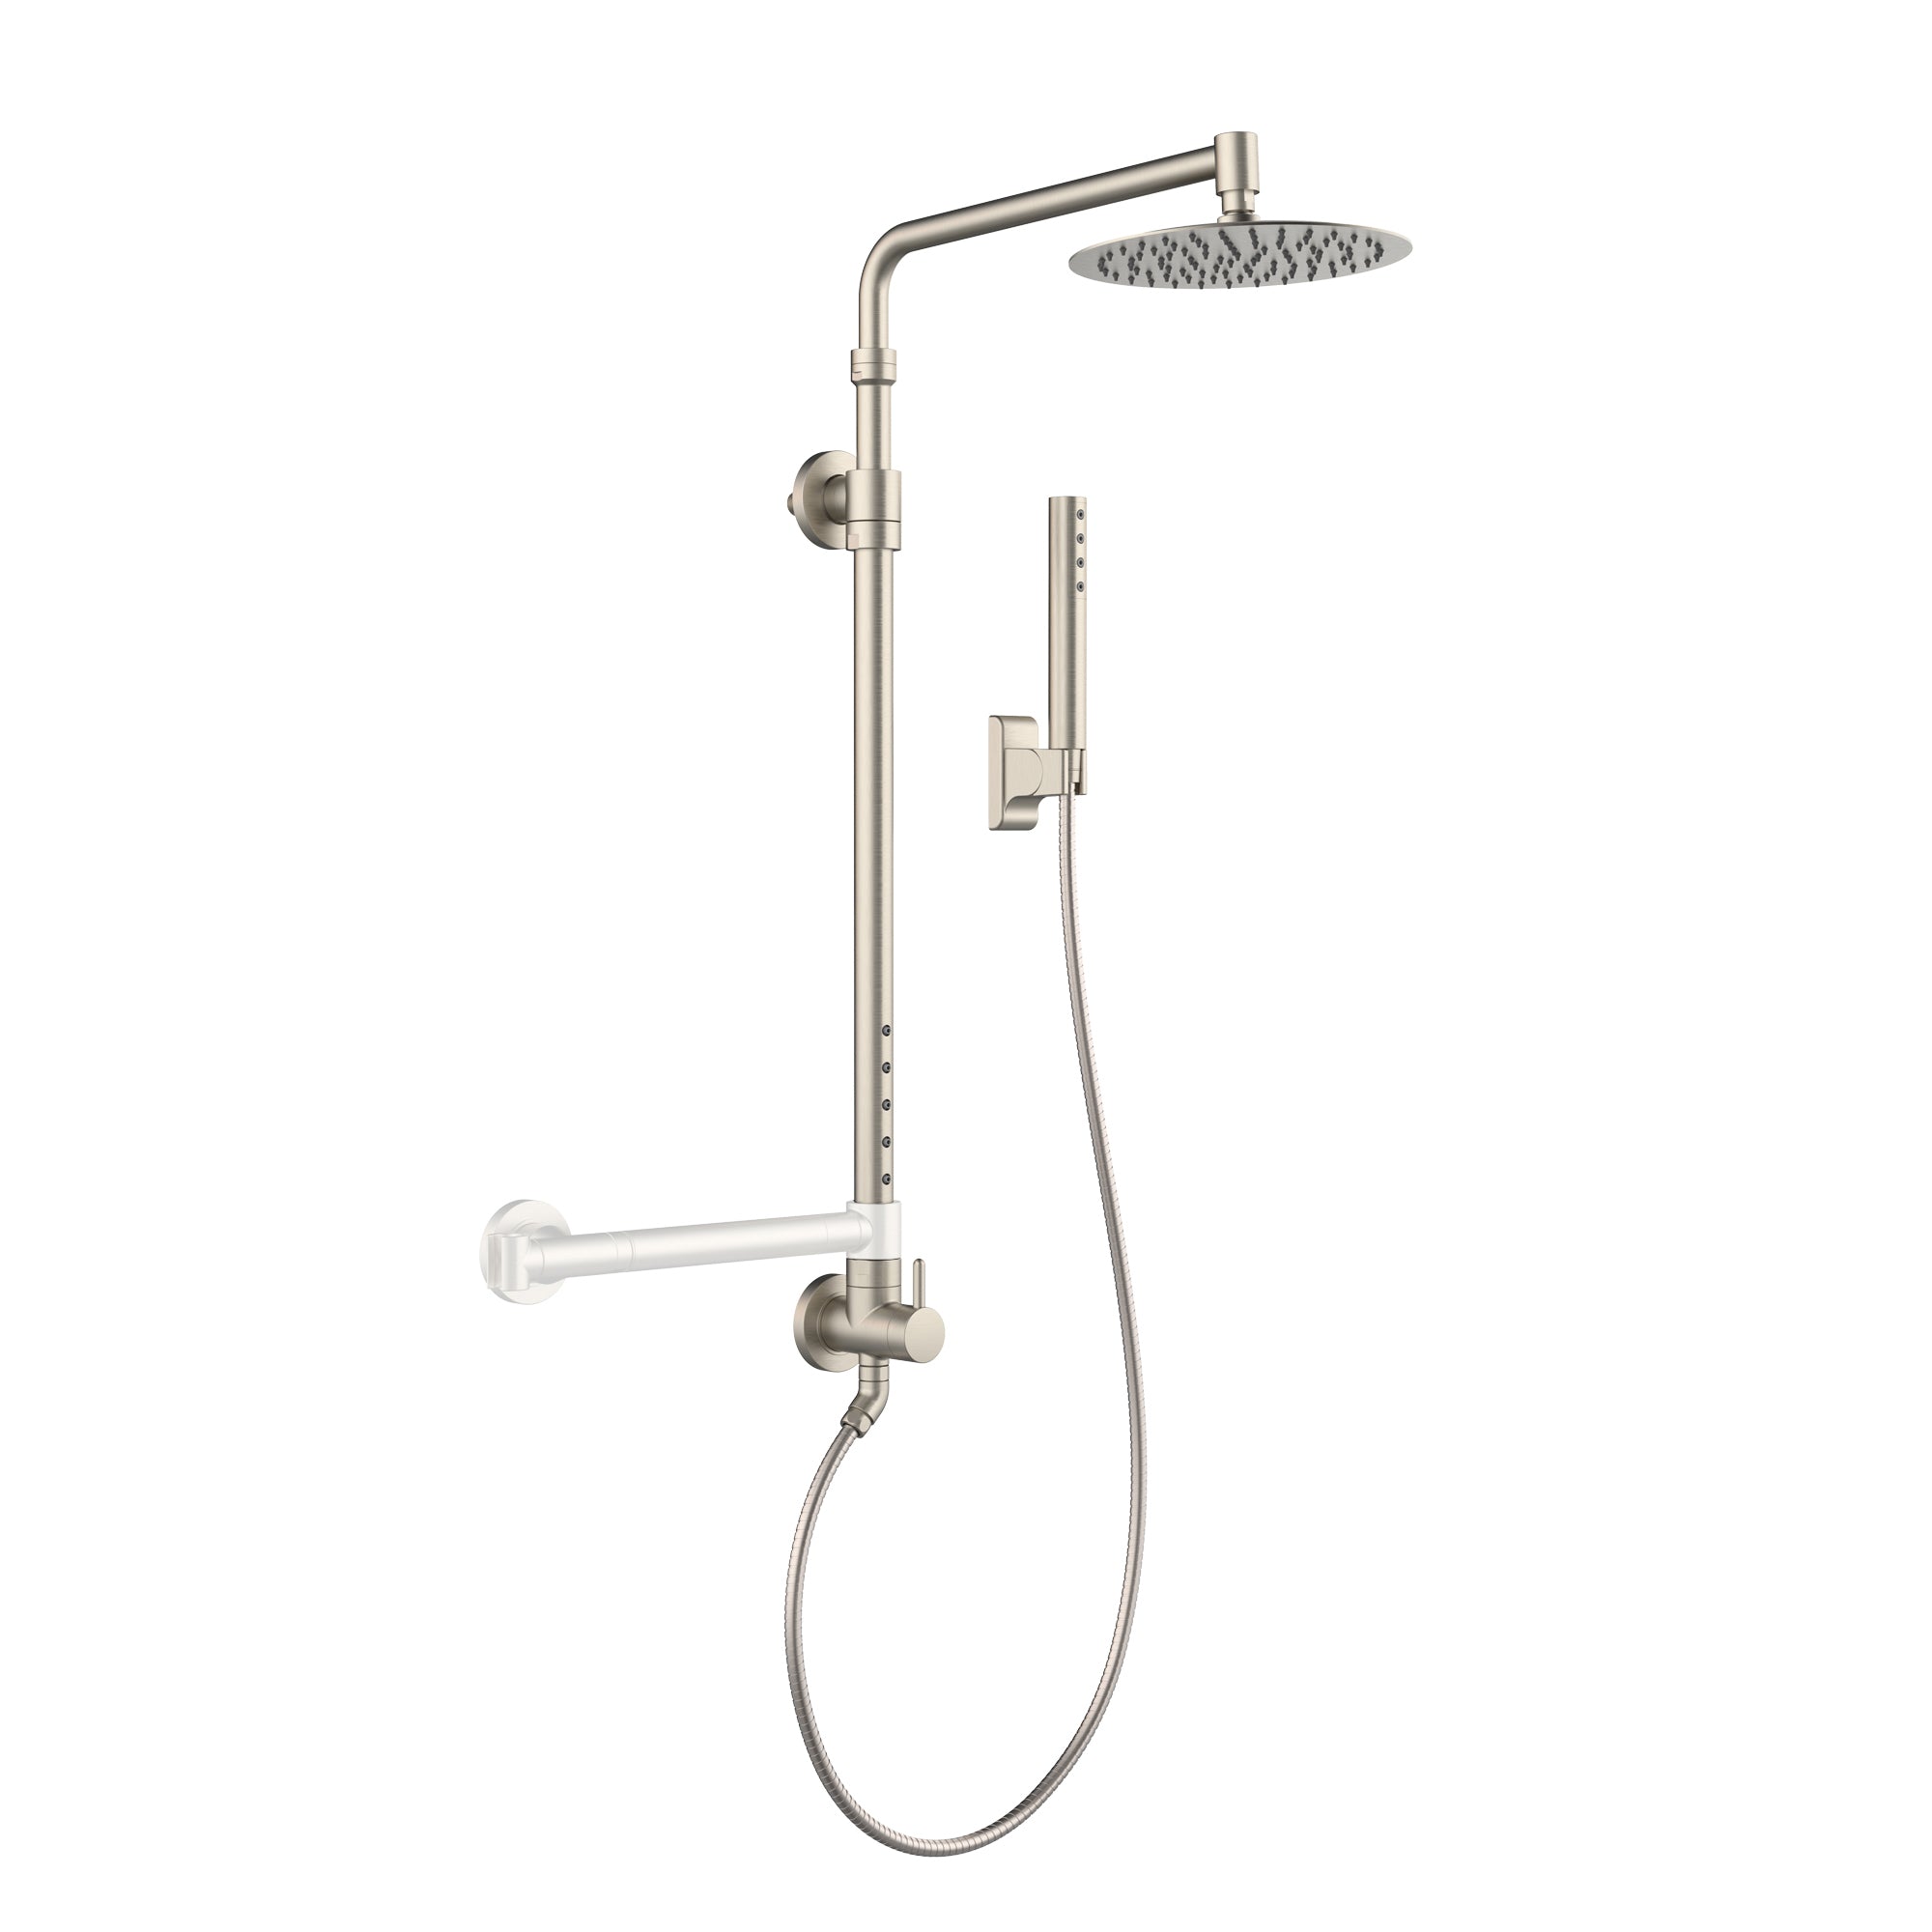 PULSE ShowerSpas Brushed Nickel Shower System - Atlantis Shower System